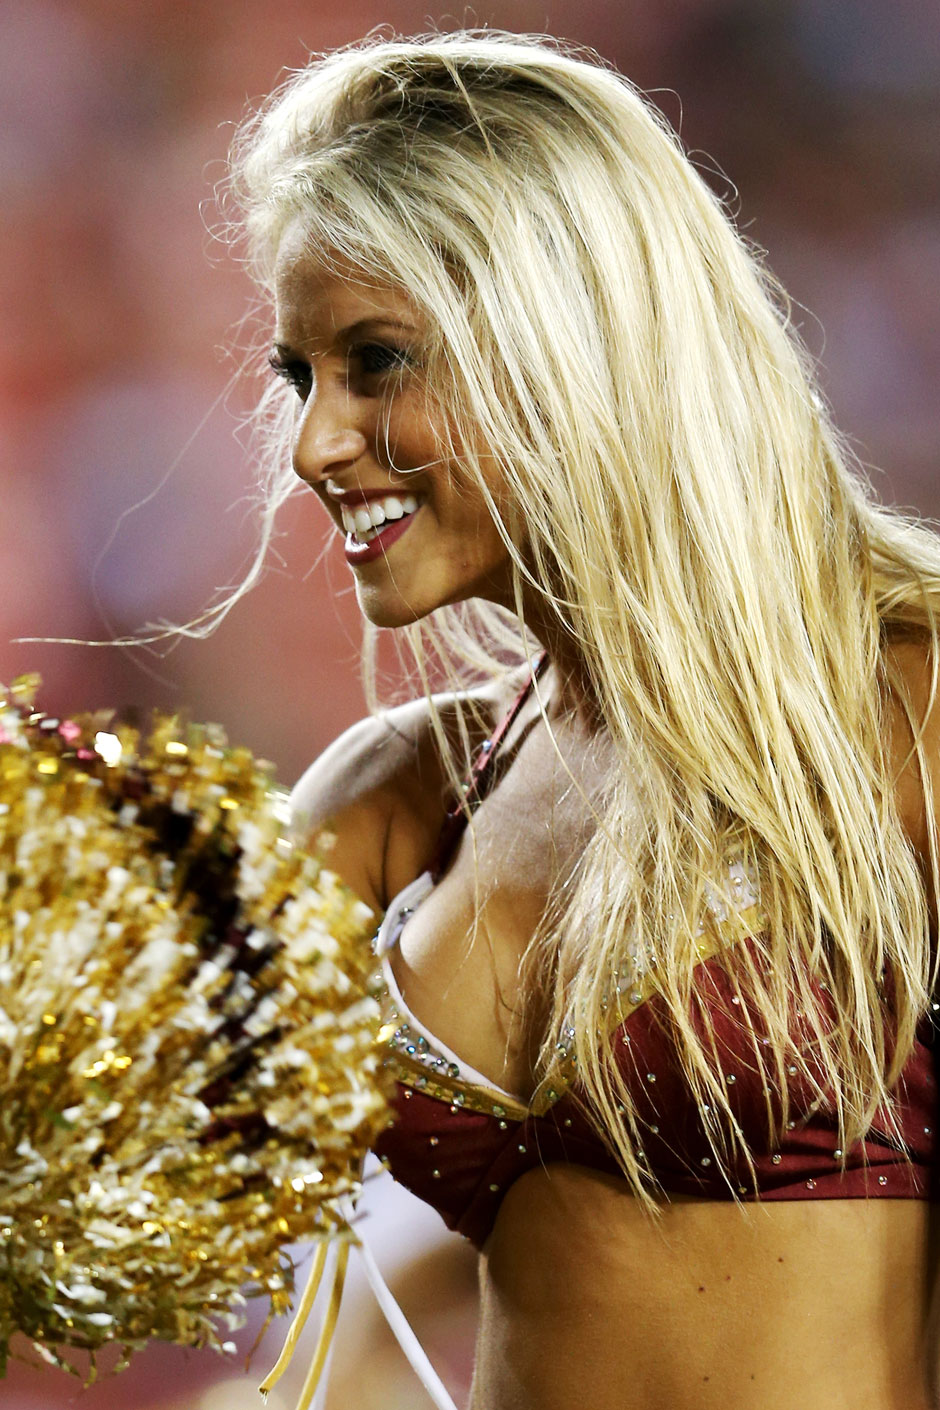 Die heißesten Cheerleader der NFL: Washington Redskins